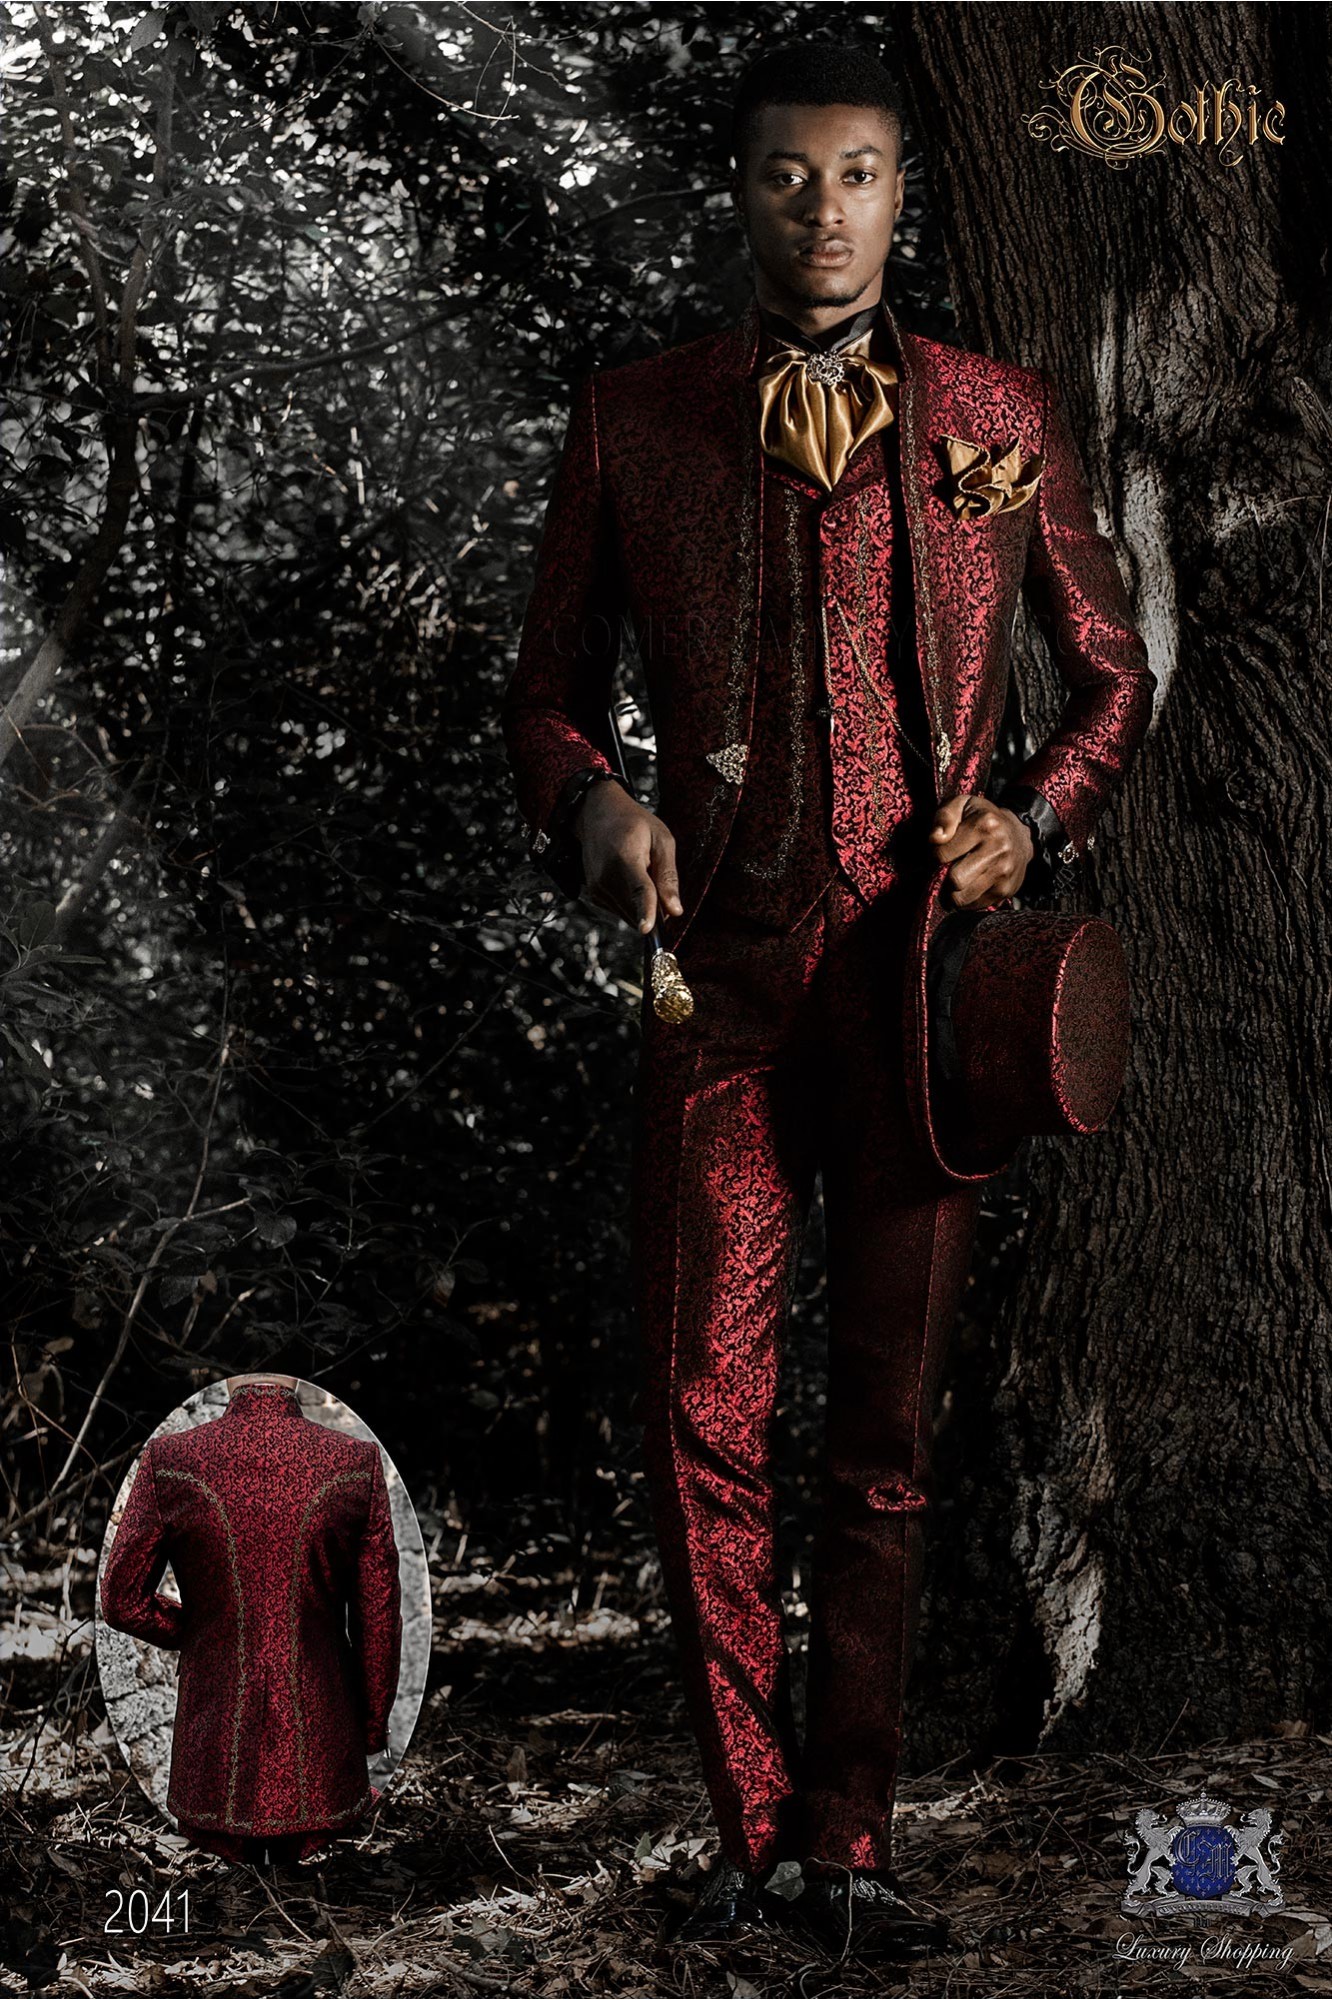 levita de época cuello mao en tejido jacquard rojo con bordados dorados y broche de cristal modelo: 2041 Mario Moyano colección Barroco